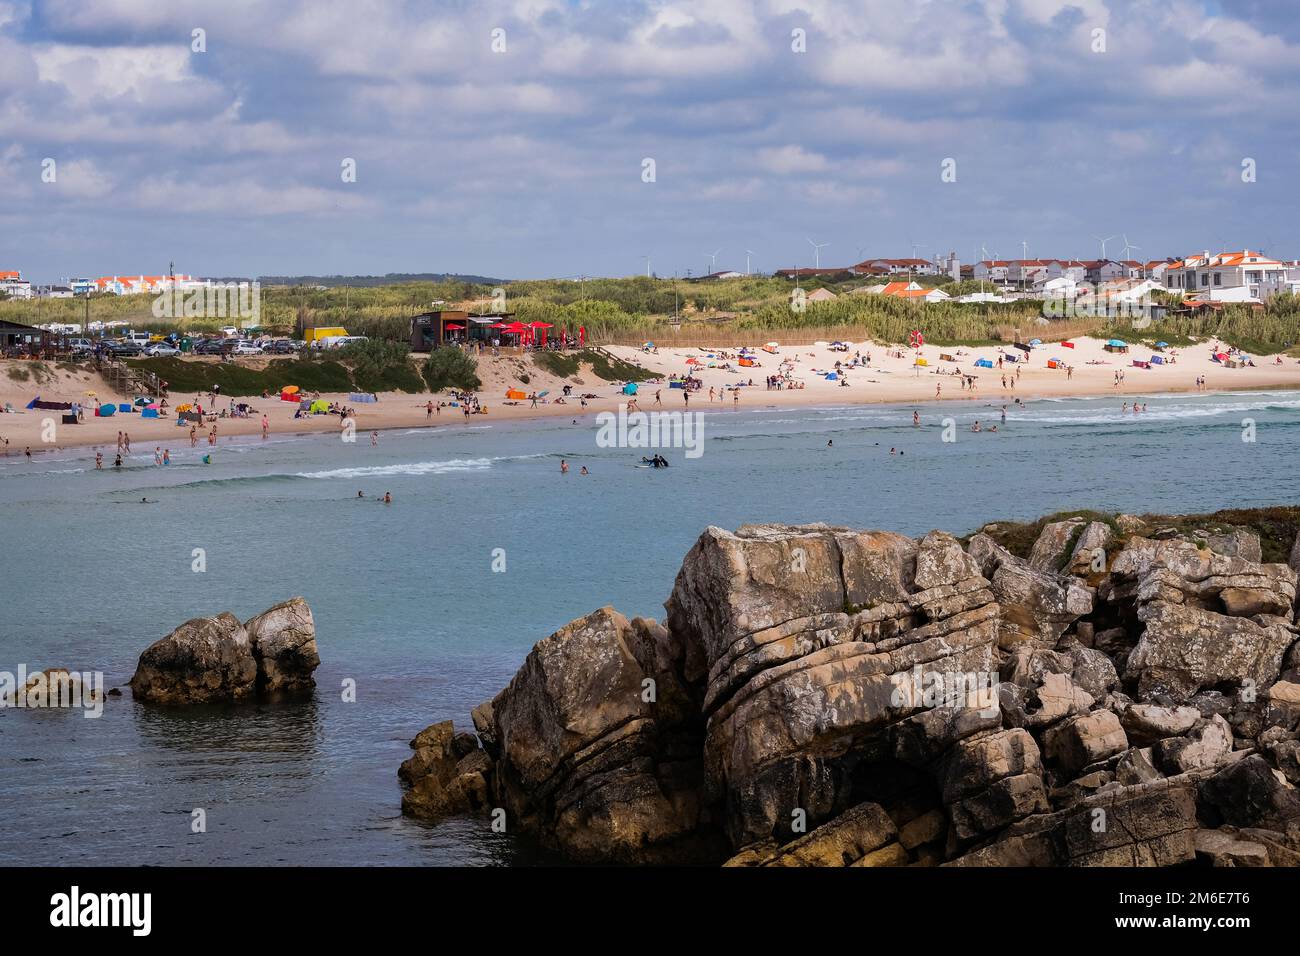 Menschen genießen das schöne Wetter am Strand - Sommertag in Baleal (Peniche), Portugal Stockfoto